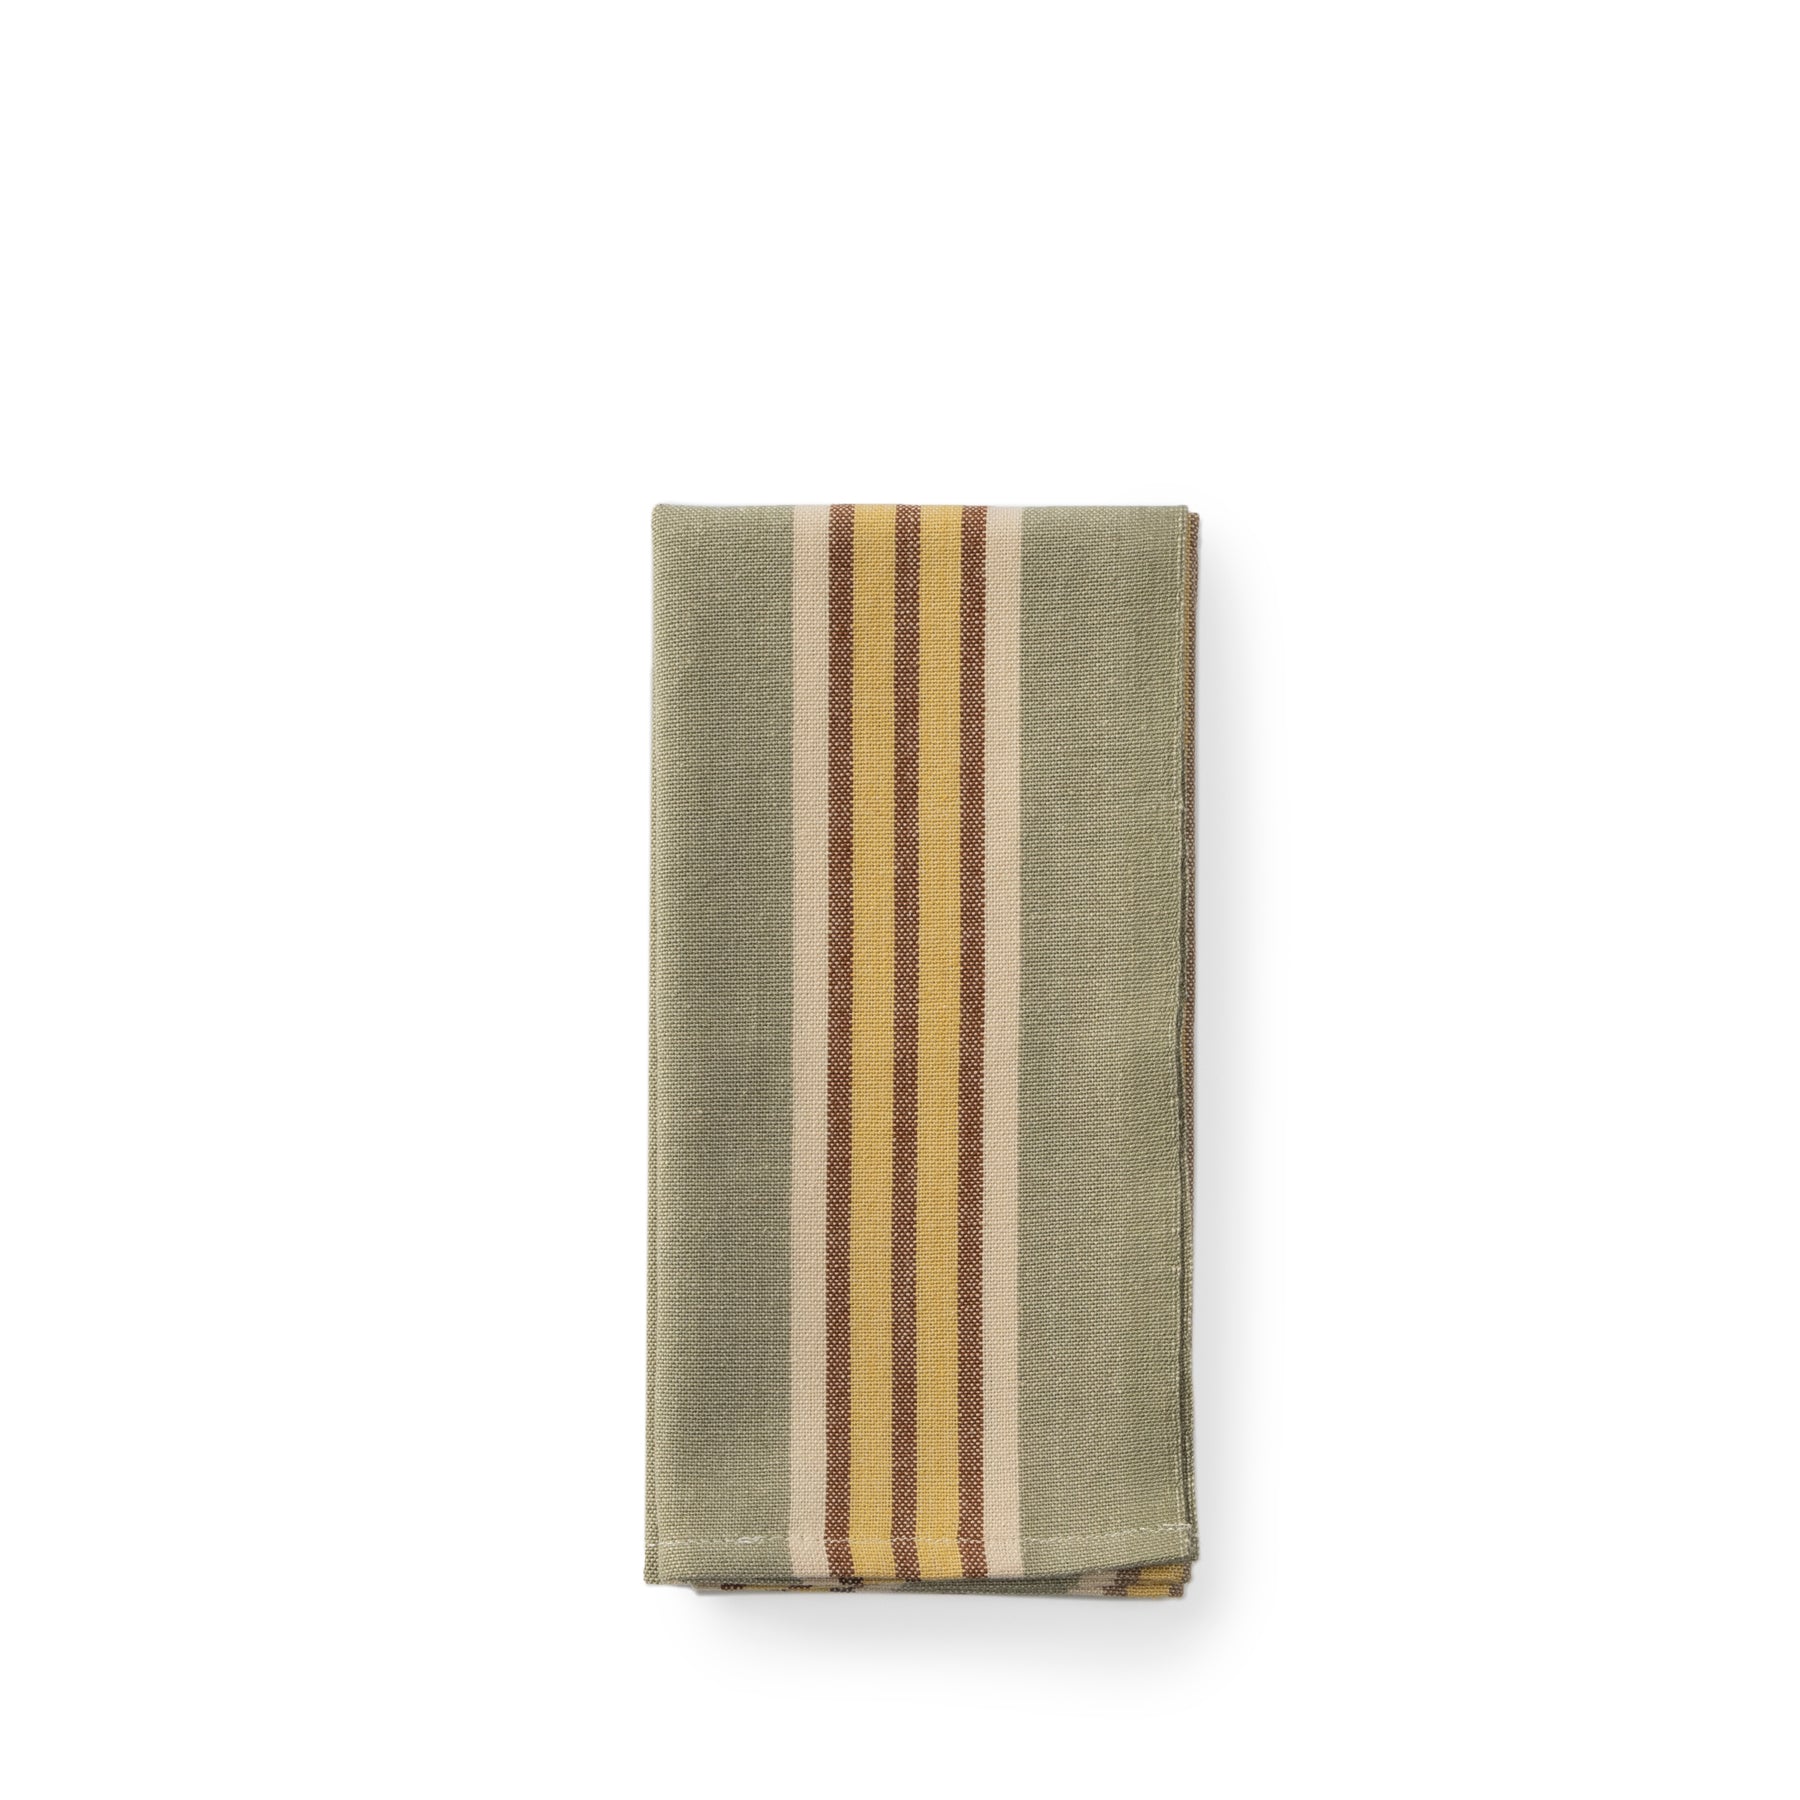 Provencial Stripe Napkin in Beige Claro Zoom Image 1